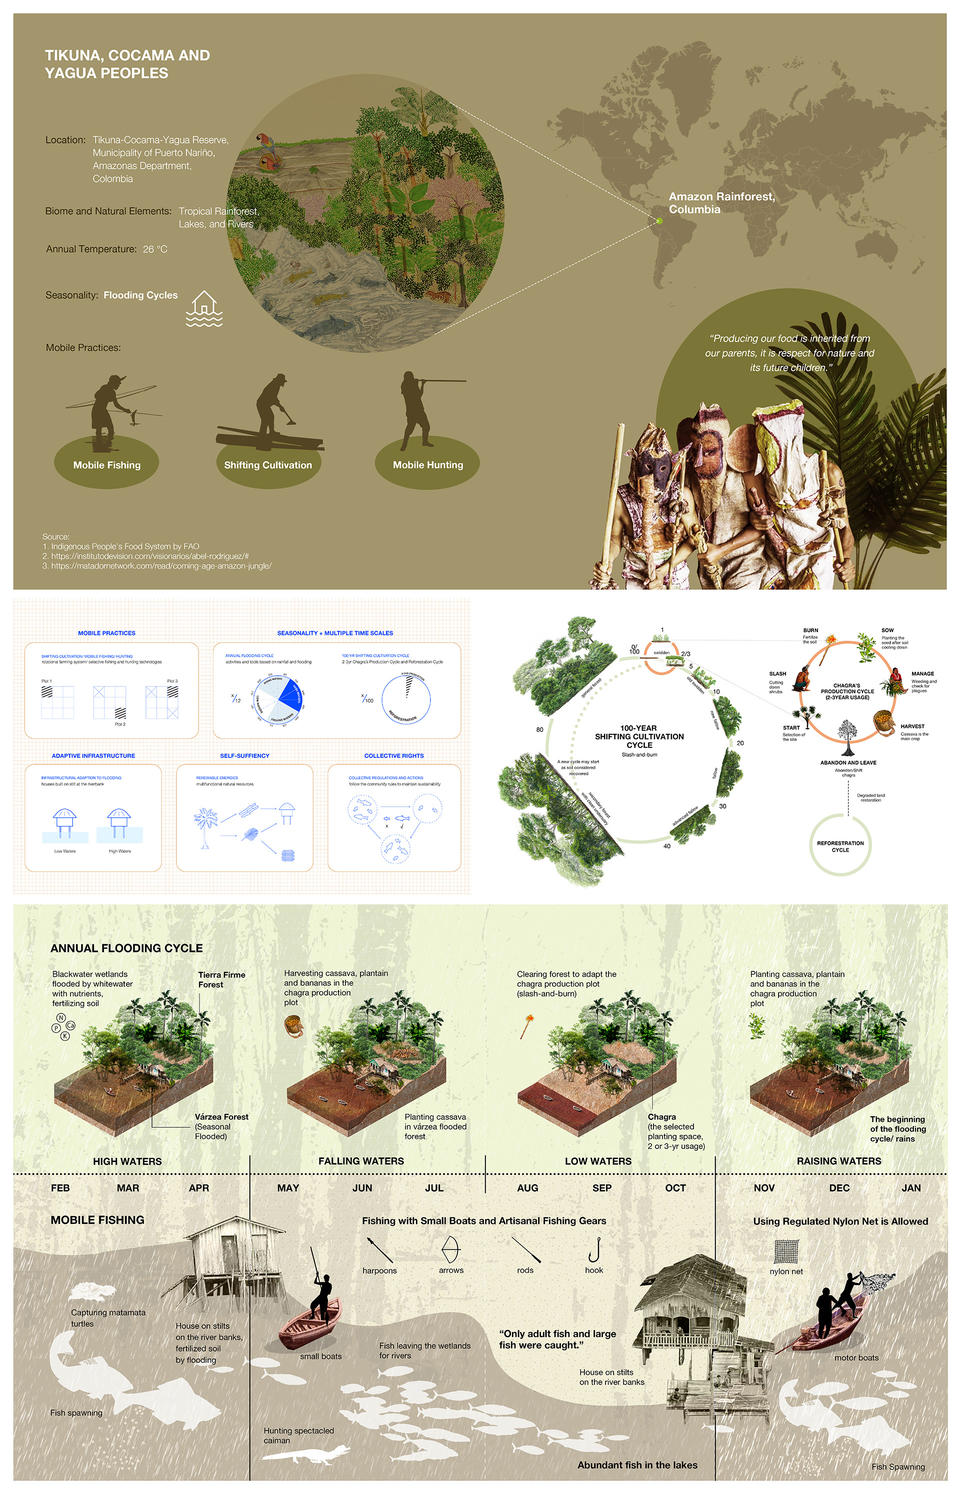 The Tikuna, Cocama, and Yagua Peoples’ Sustainable Strategies